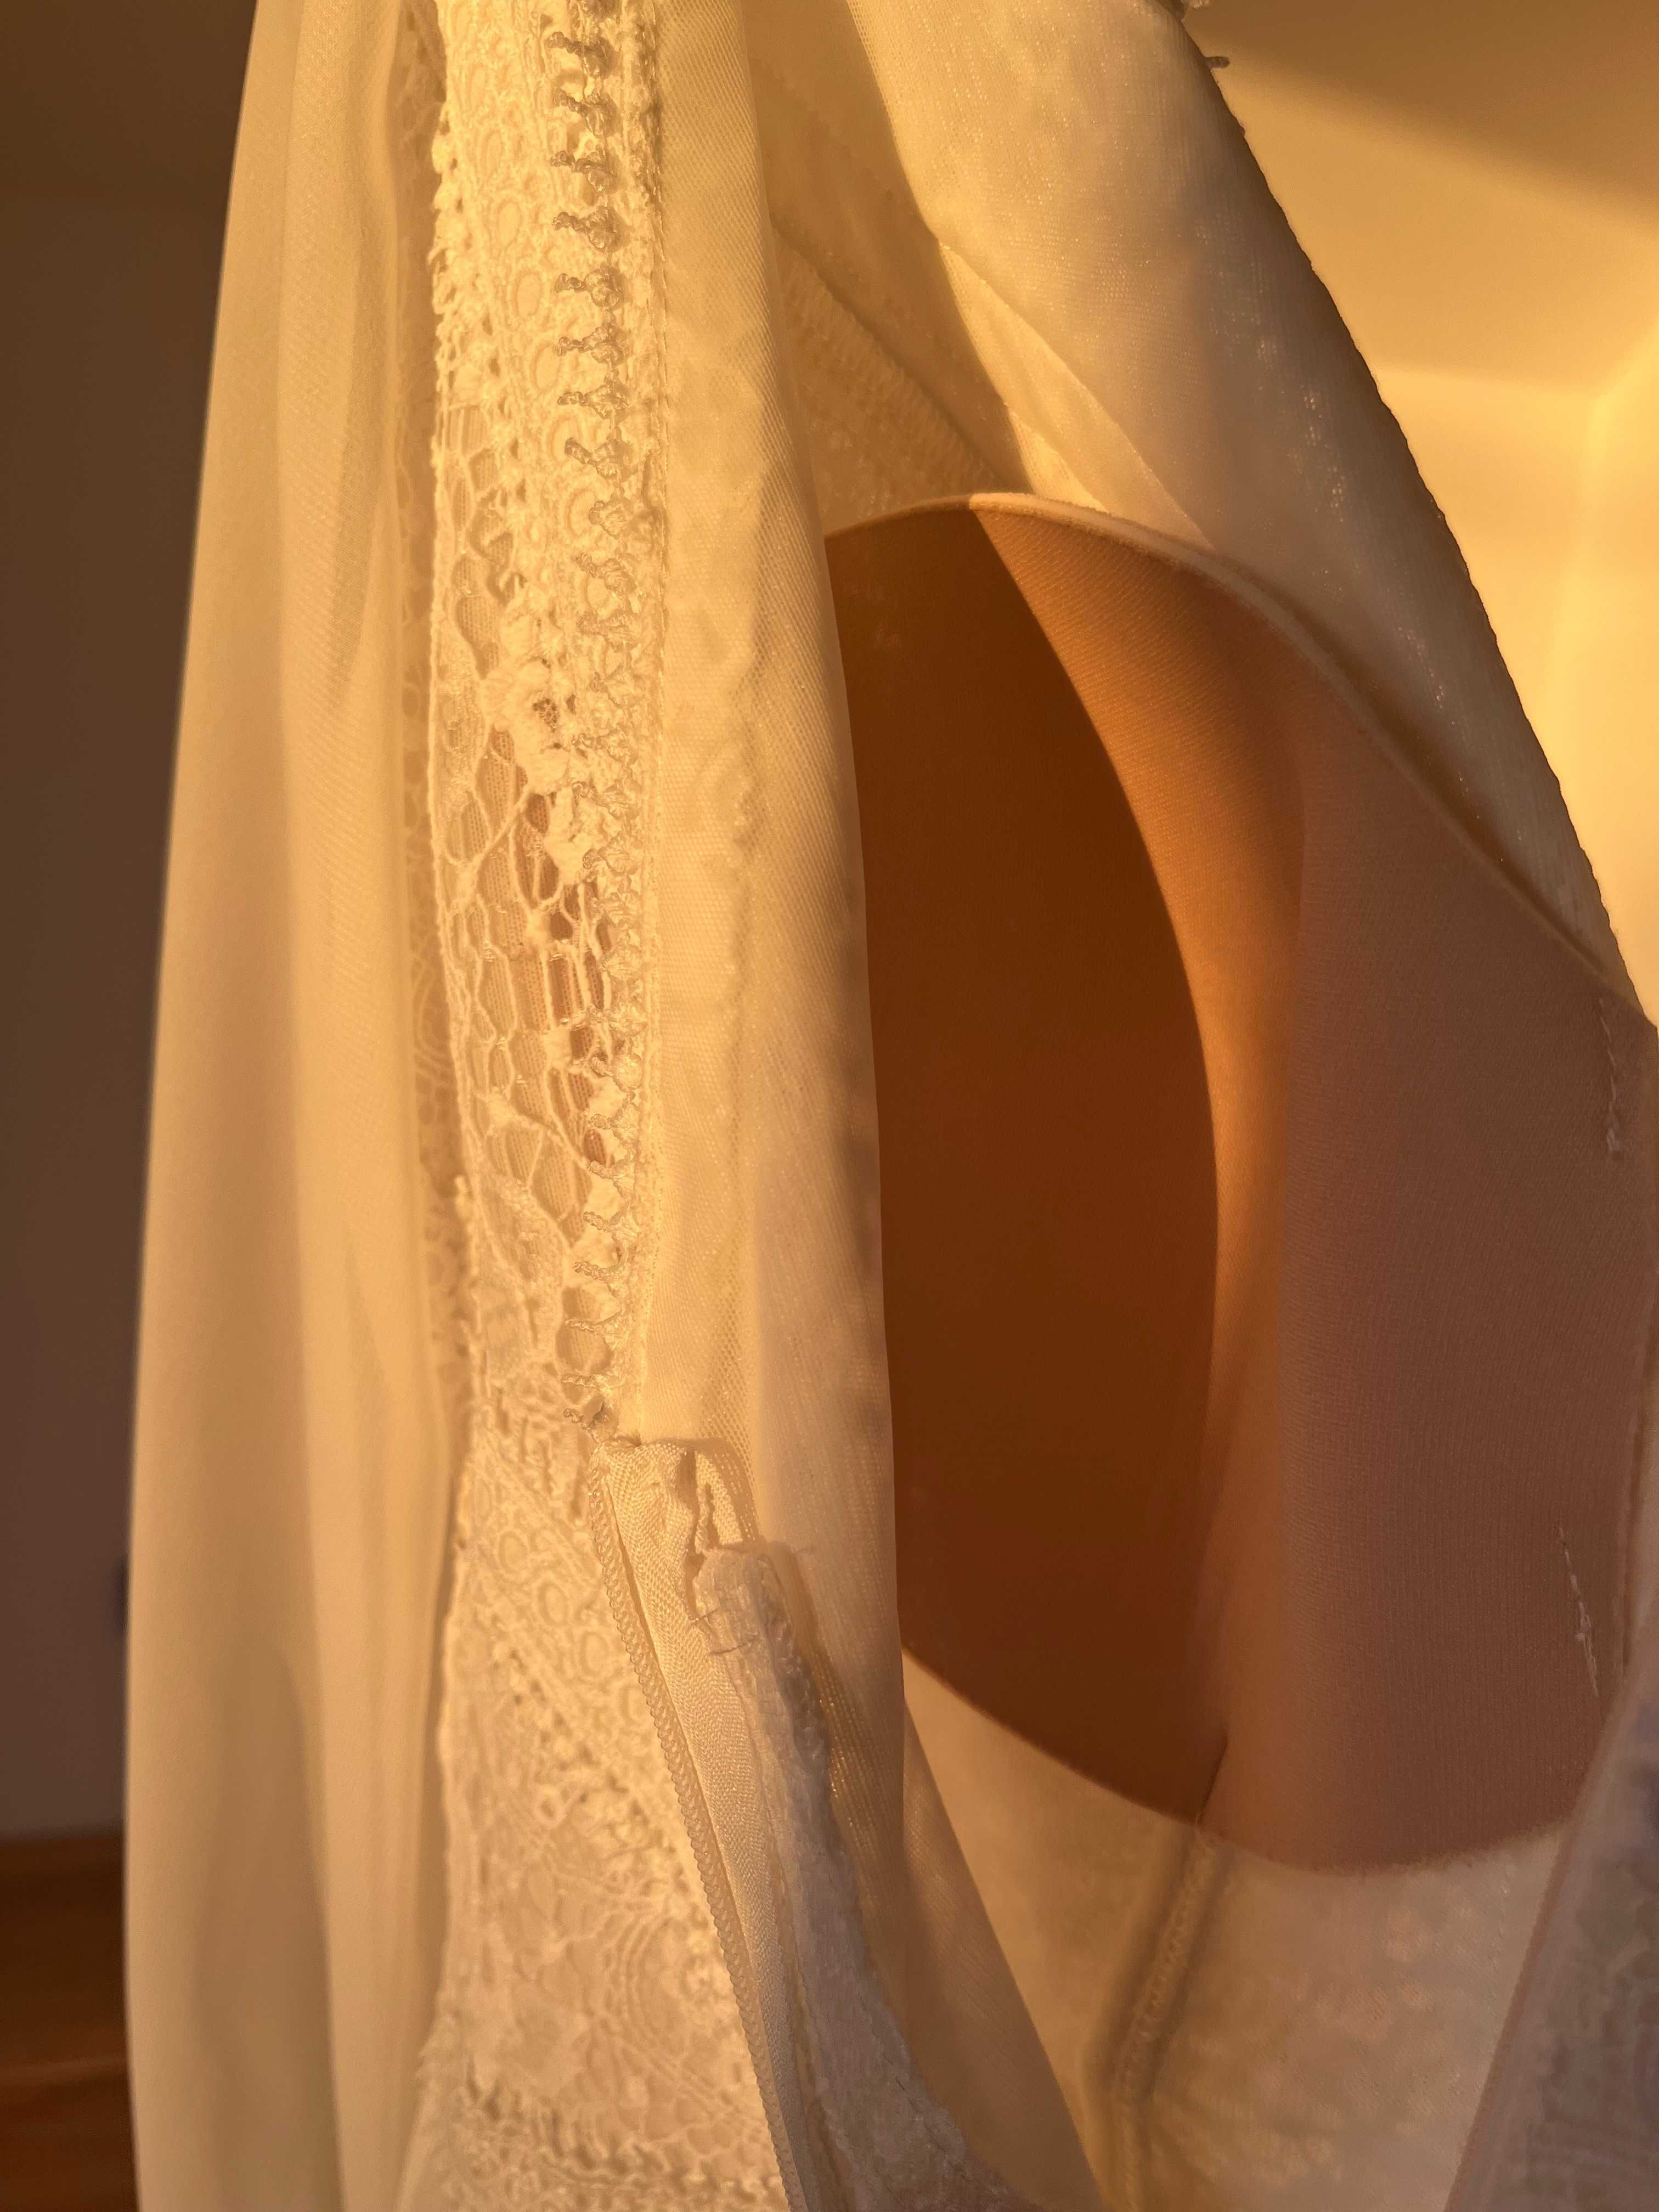 Suknia ślubna w stylu boho